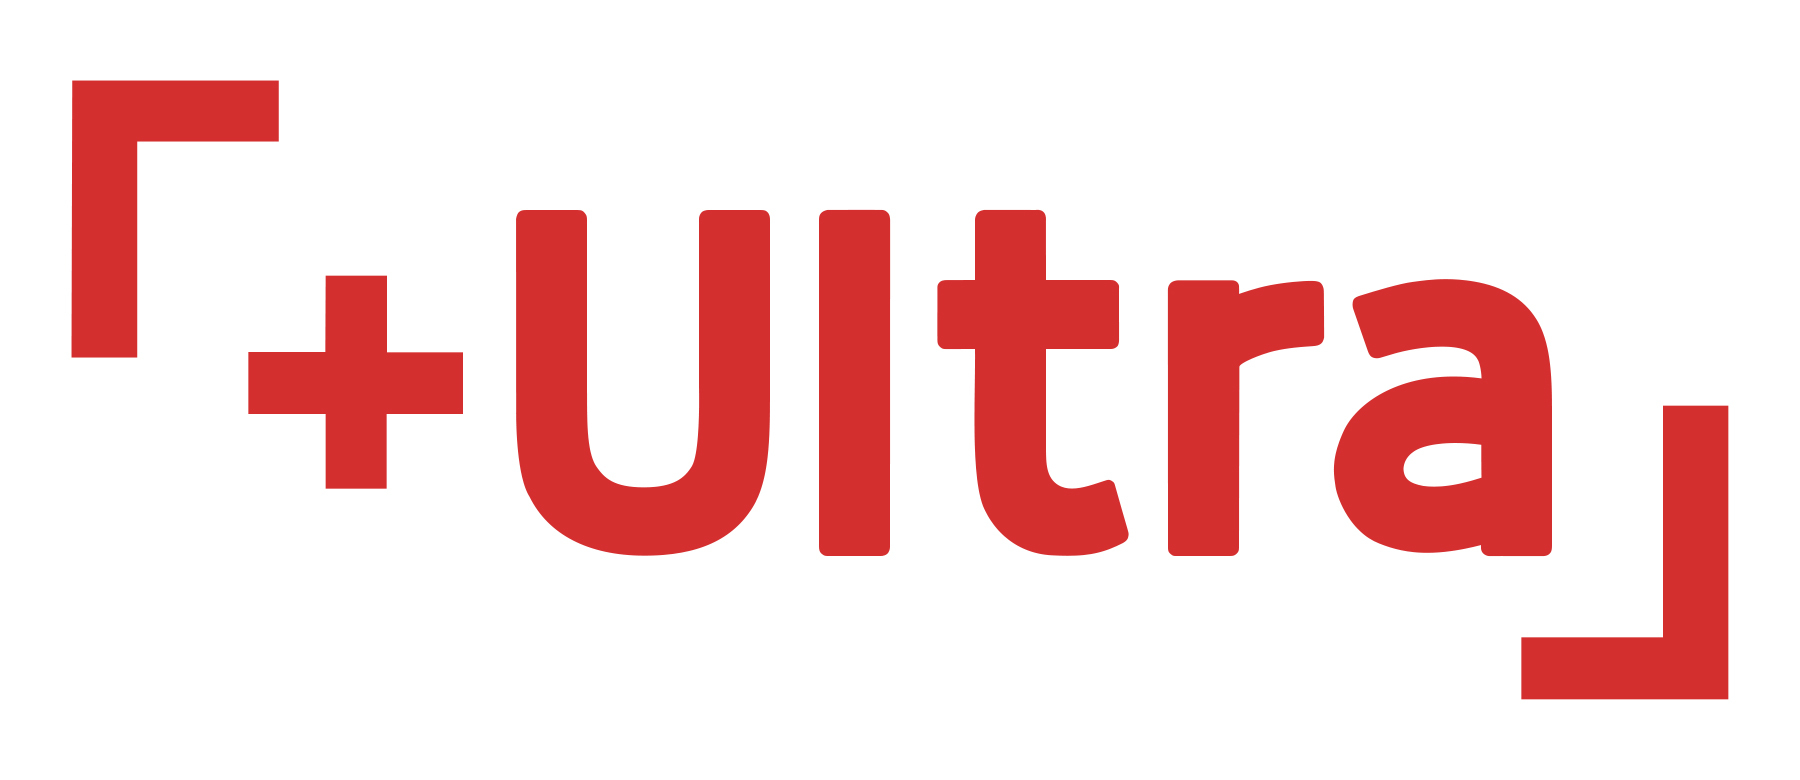 フジテレビで新設されるアニメ枠「+Ultra」のロゴ